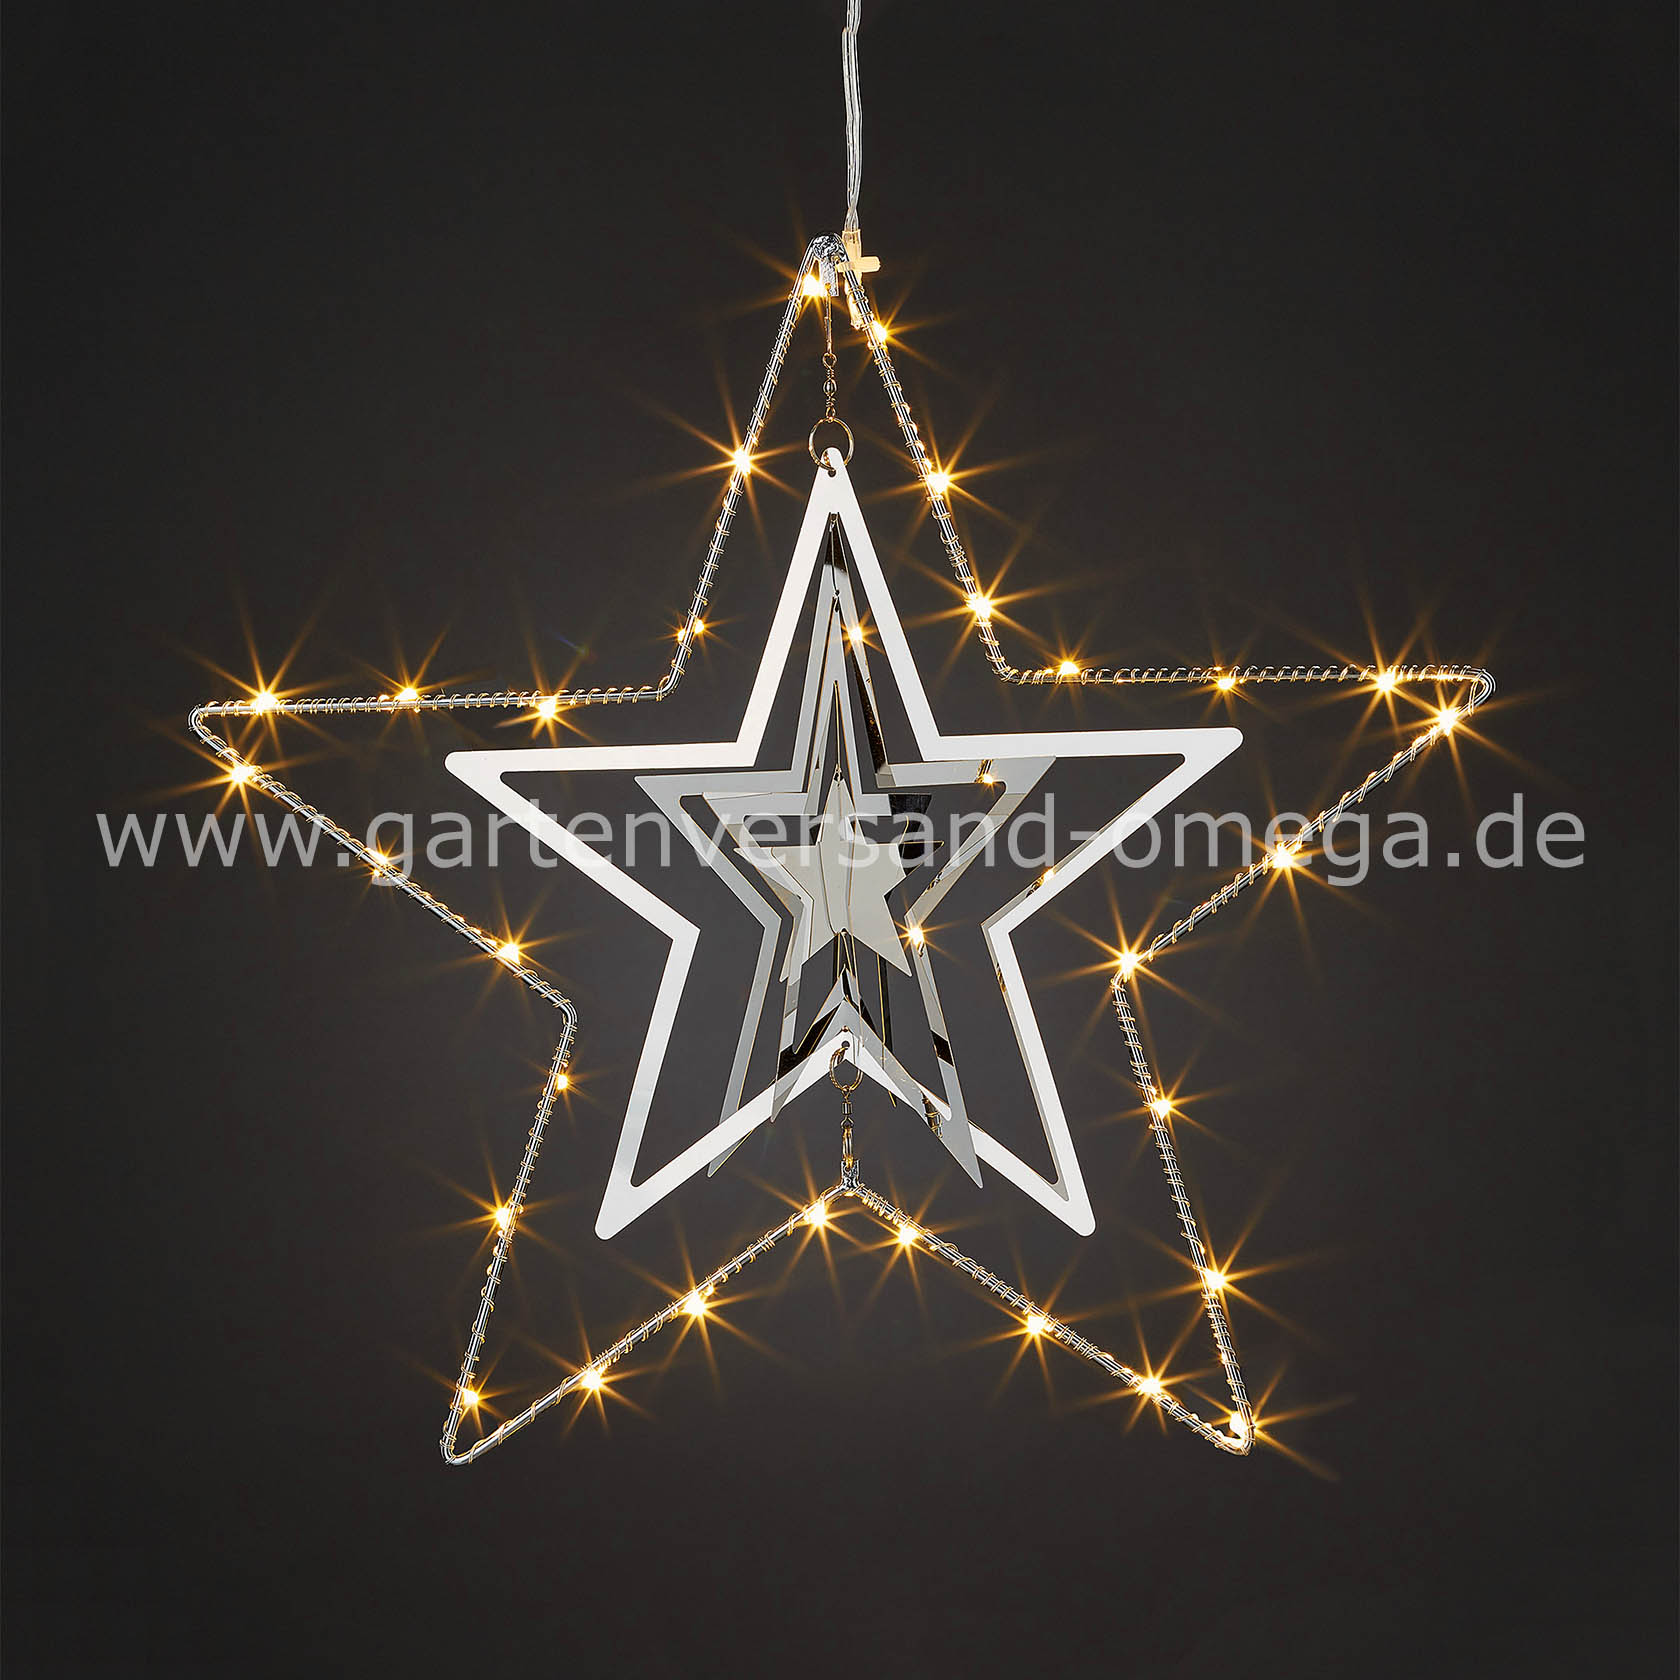 Hängen, Stern - Stern-Mobilee, LED-Stern, Weihnachtsstern, LED Innen, für Metall-Stern zum Weihnachtsdeko beleuchtet, Weihnachtsbeleuchtung Deko-Weihnachtsstern LED-Mobilee, Weihnachtsbeleuchtung Metall, 3D aus